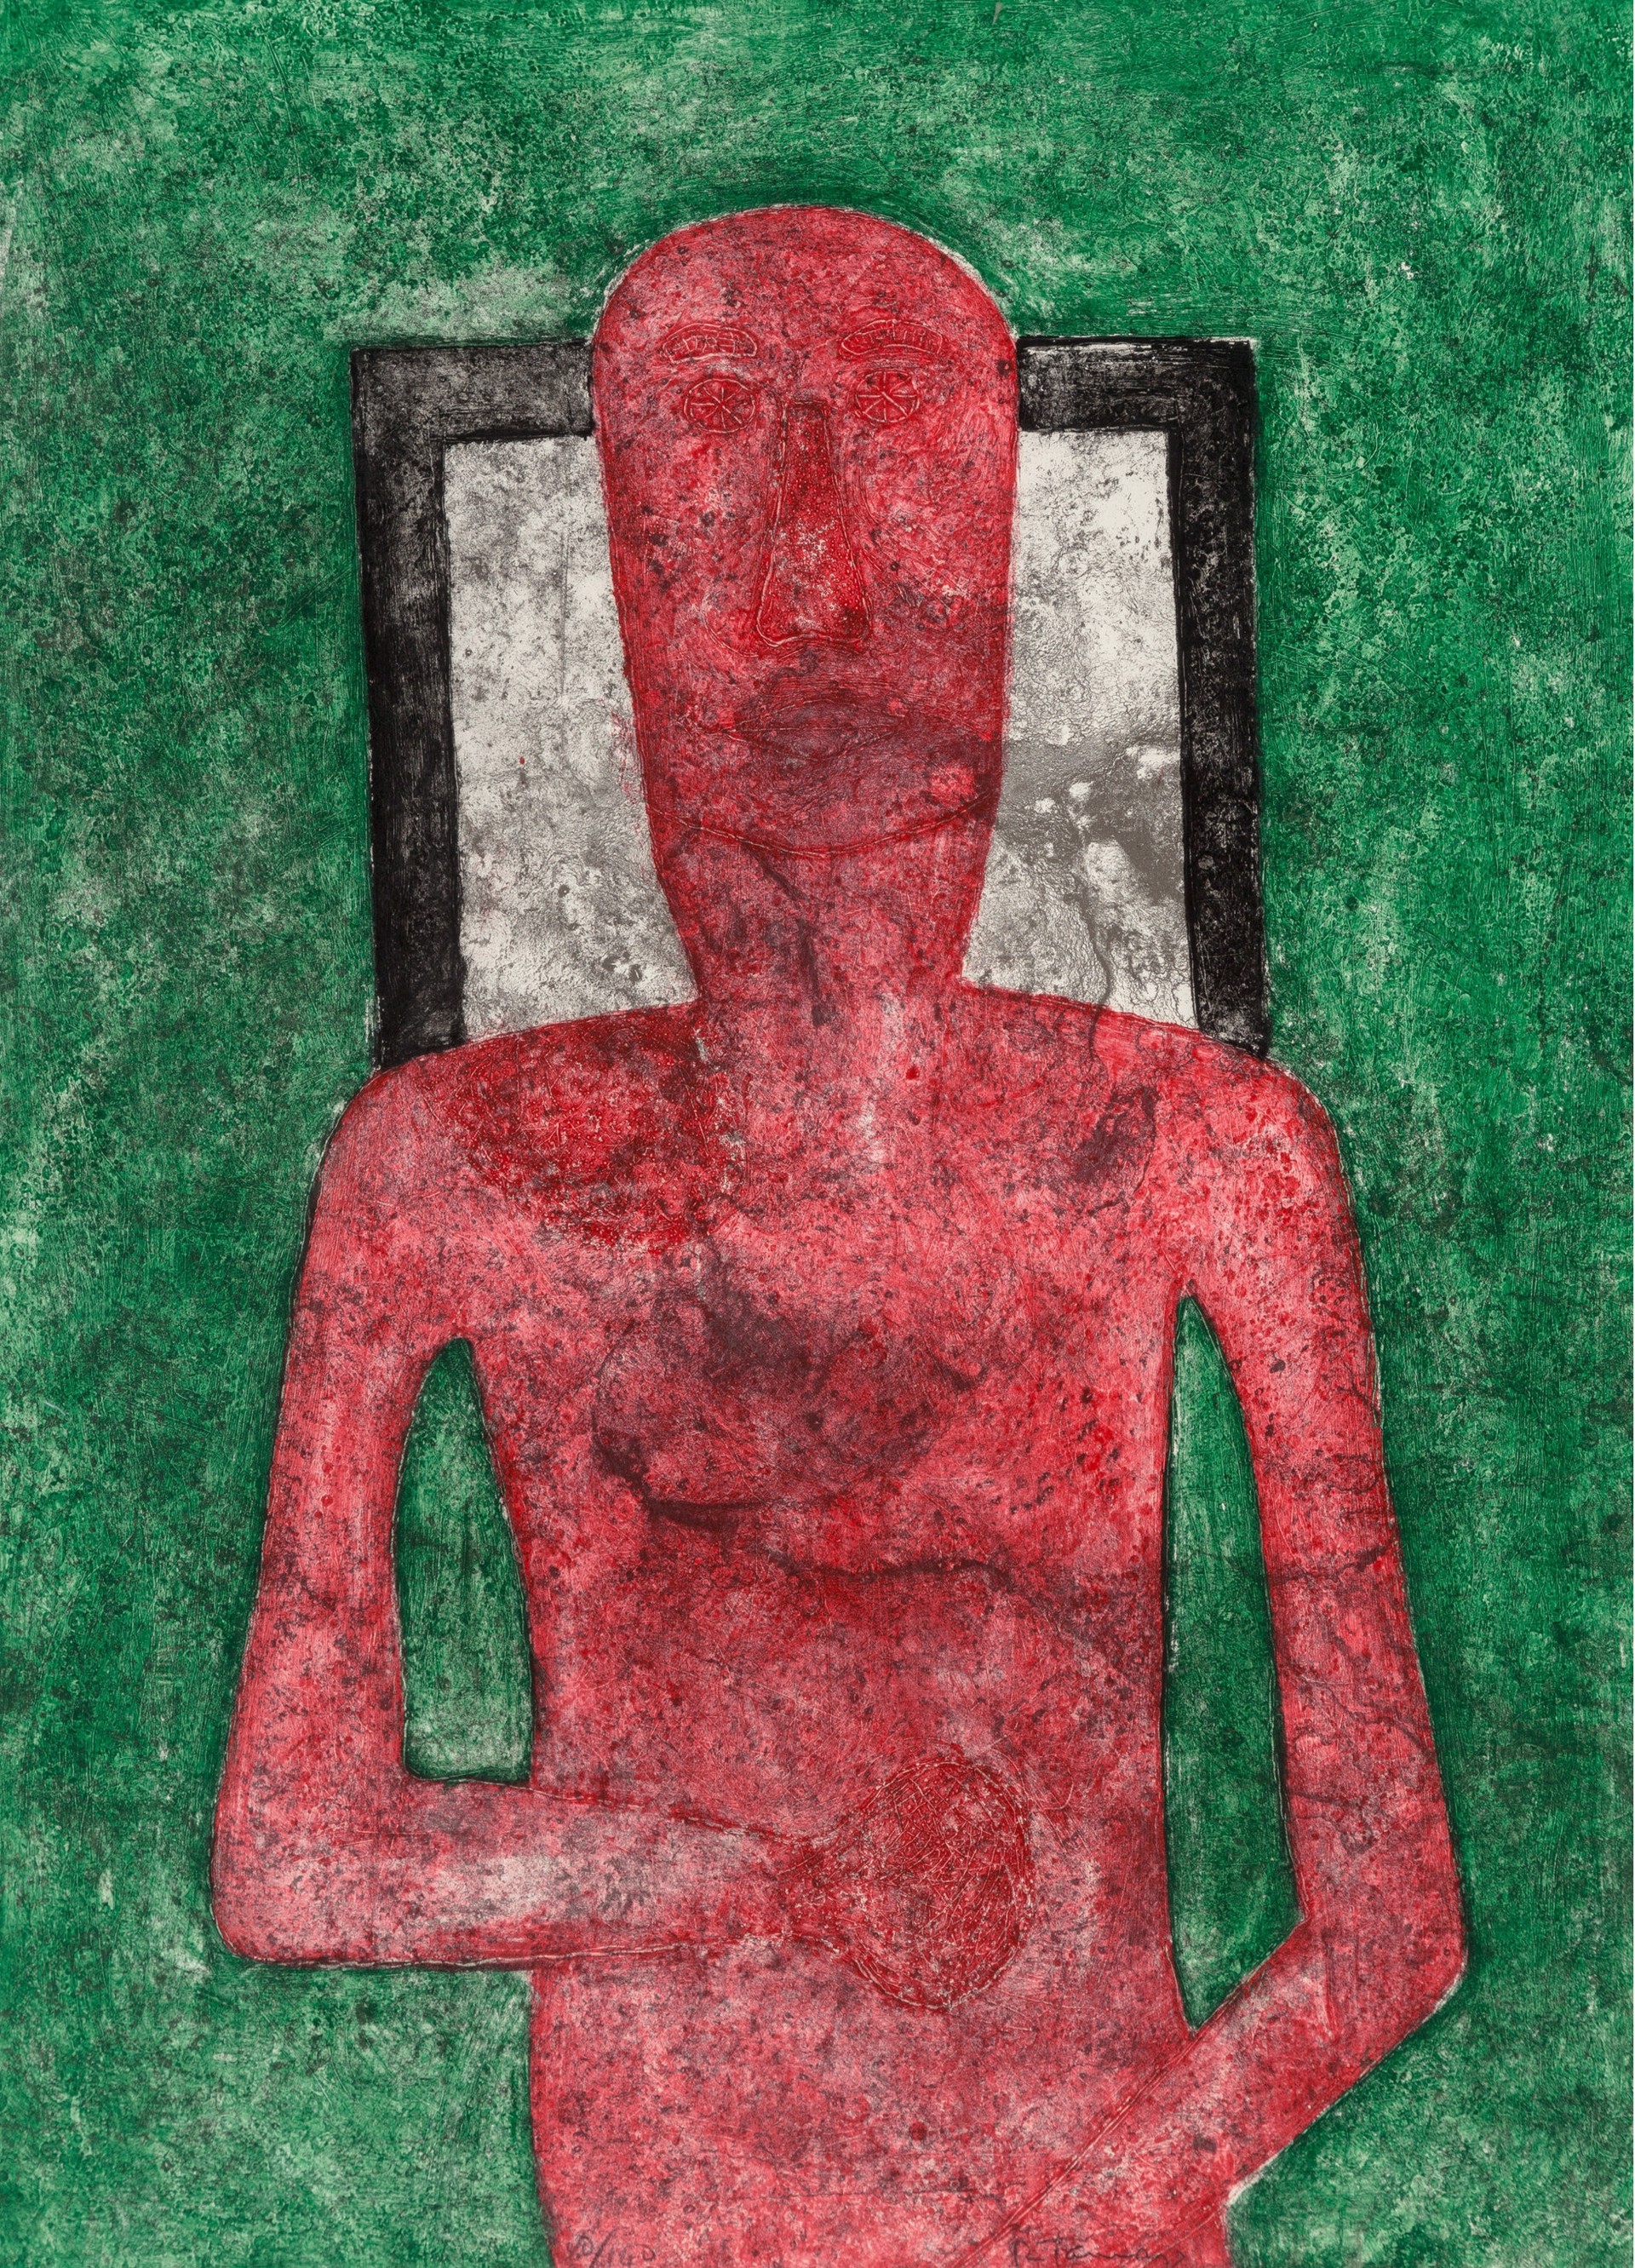 Hombre Rojo by Rufino Tamayo (1899 - 1991)